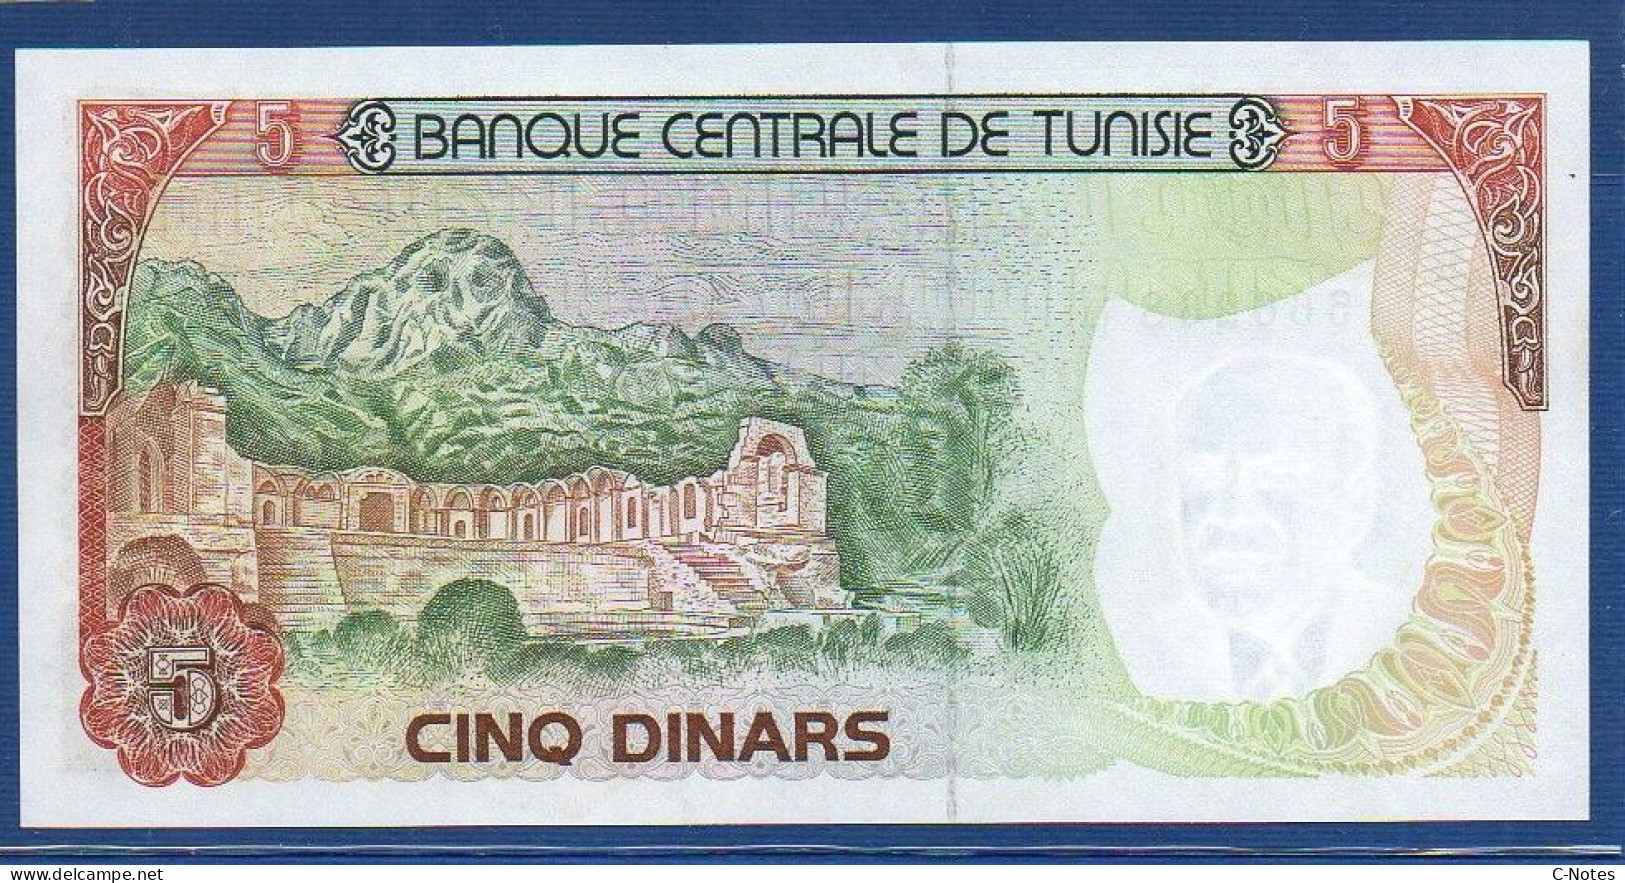 TUNISIA - P.75 – 5 Dinars 1980 UNC, S/n C/14 566268 - Tunisie